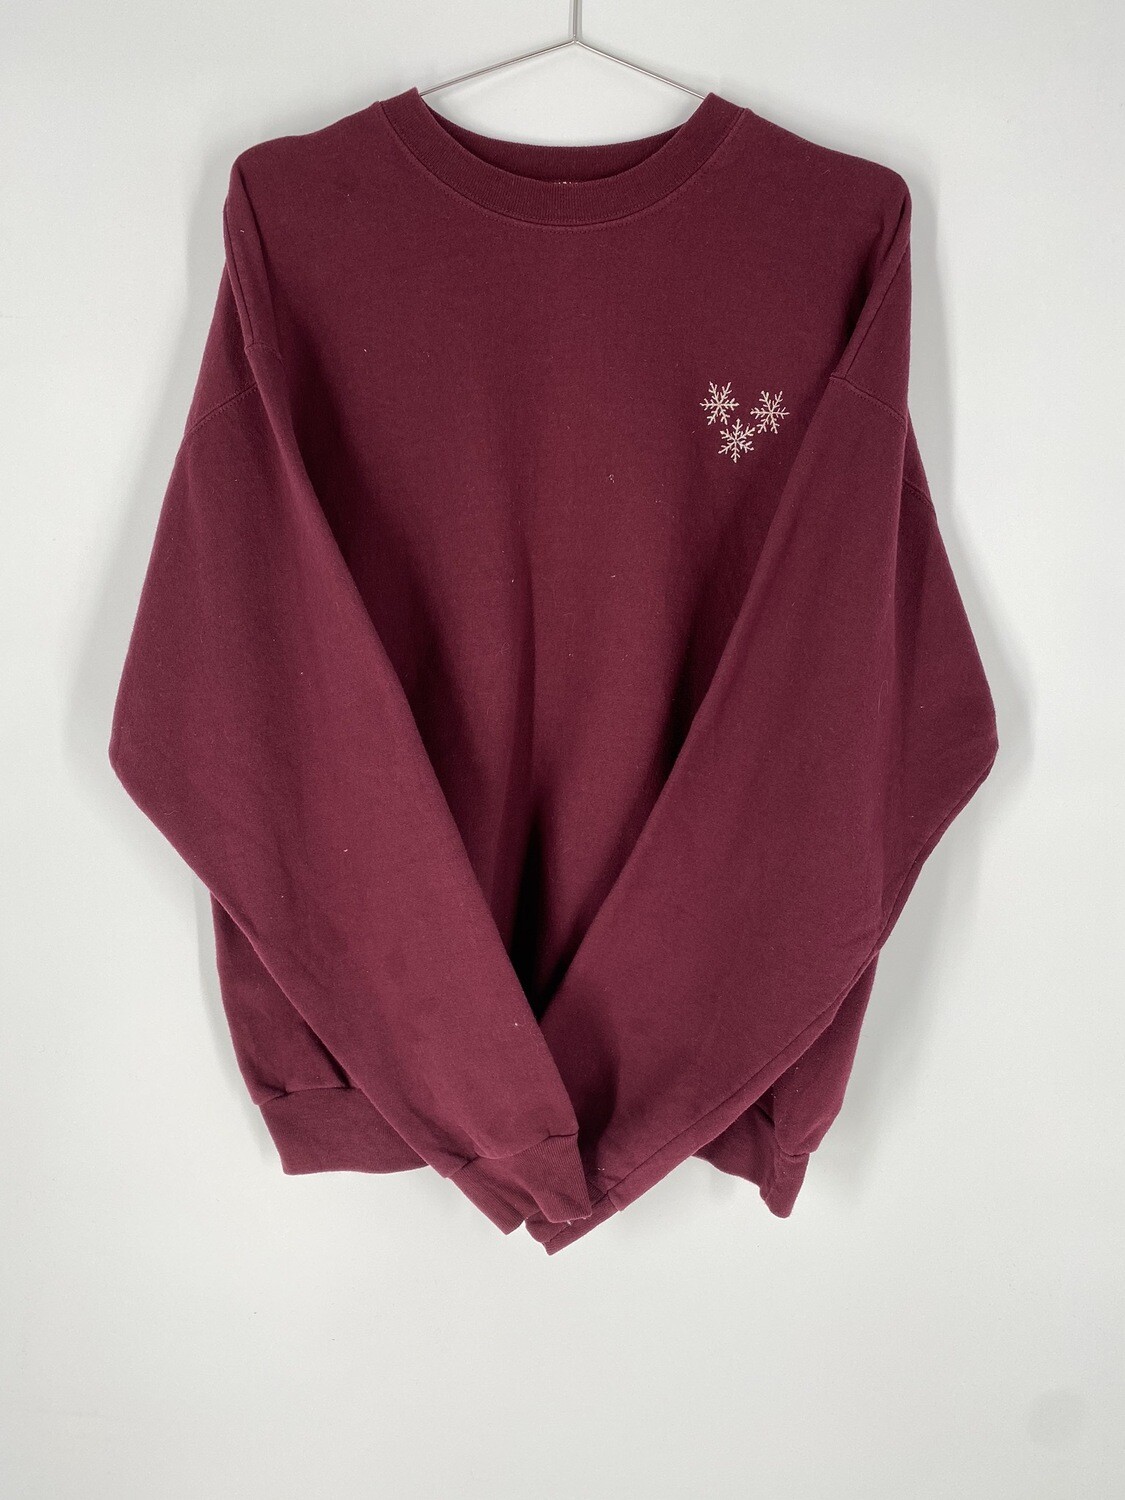 Maroon Holiday Sweatshirt Size L